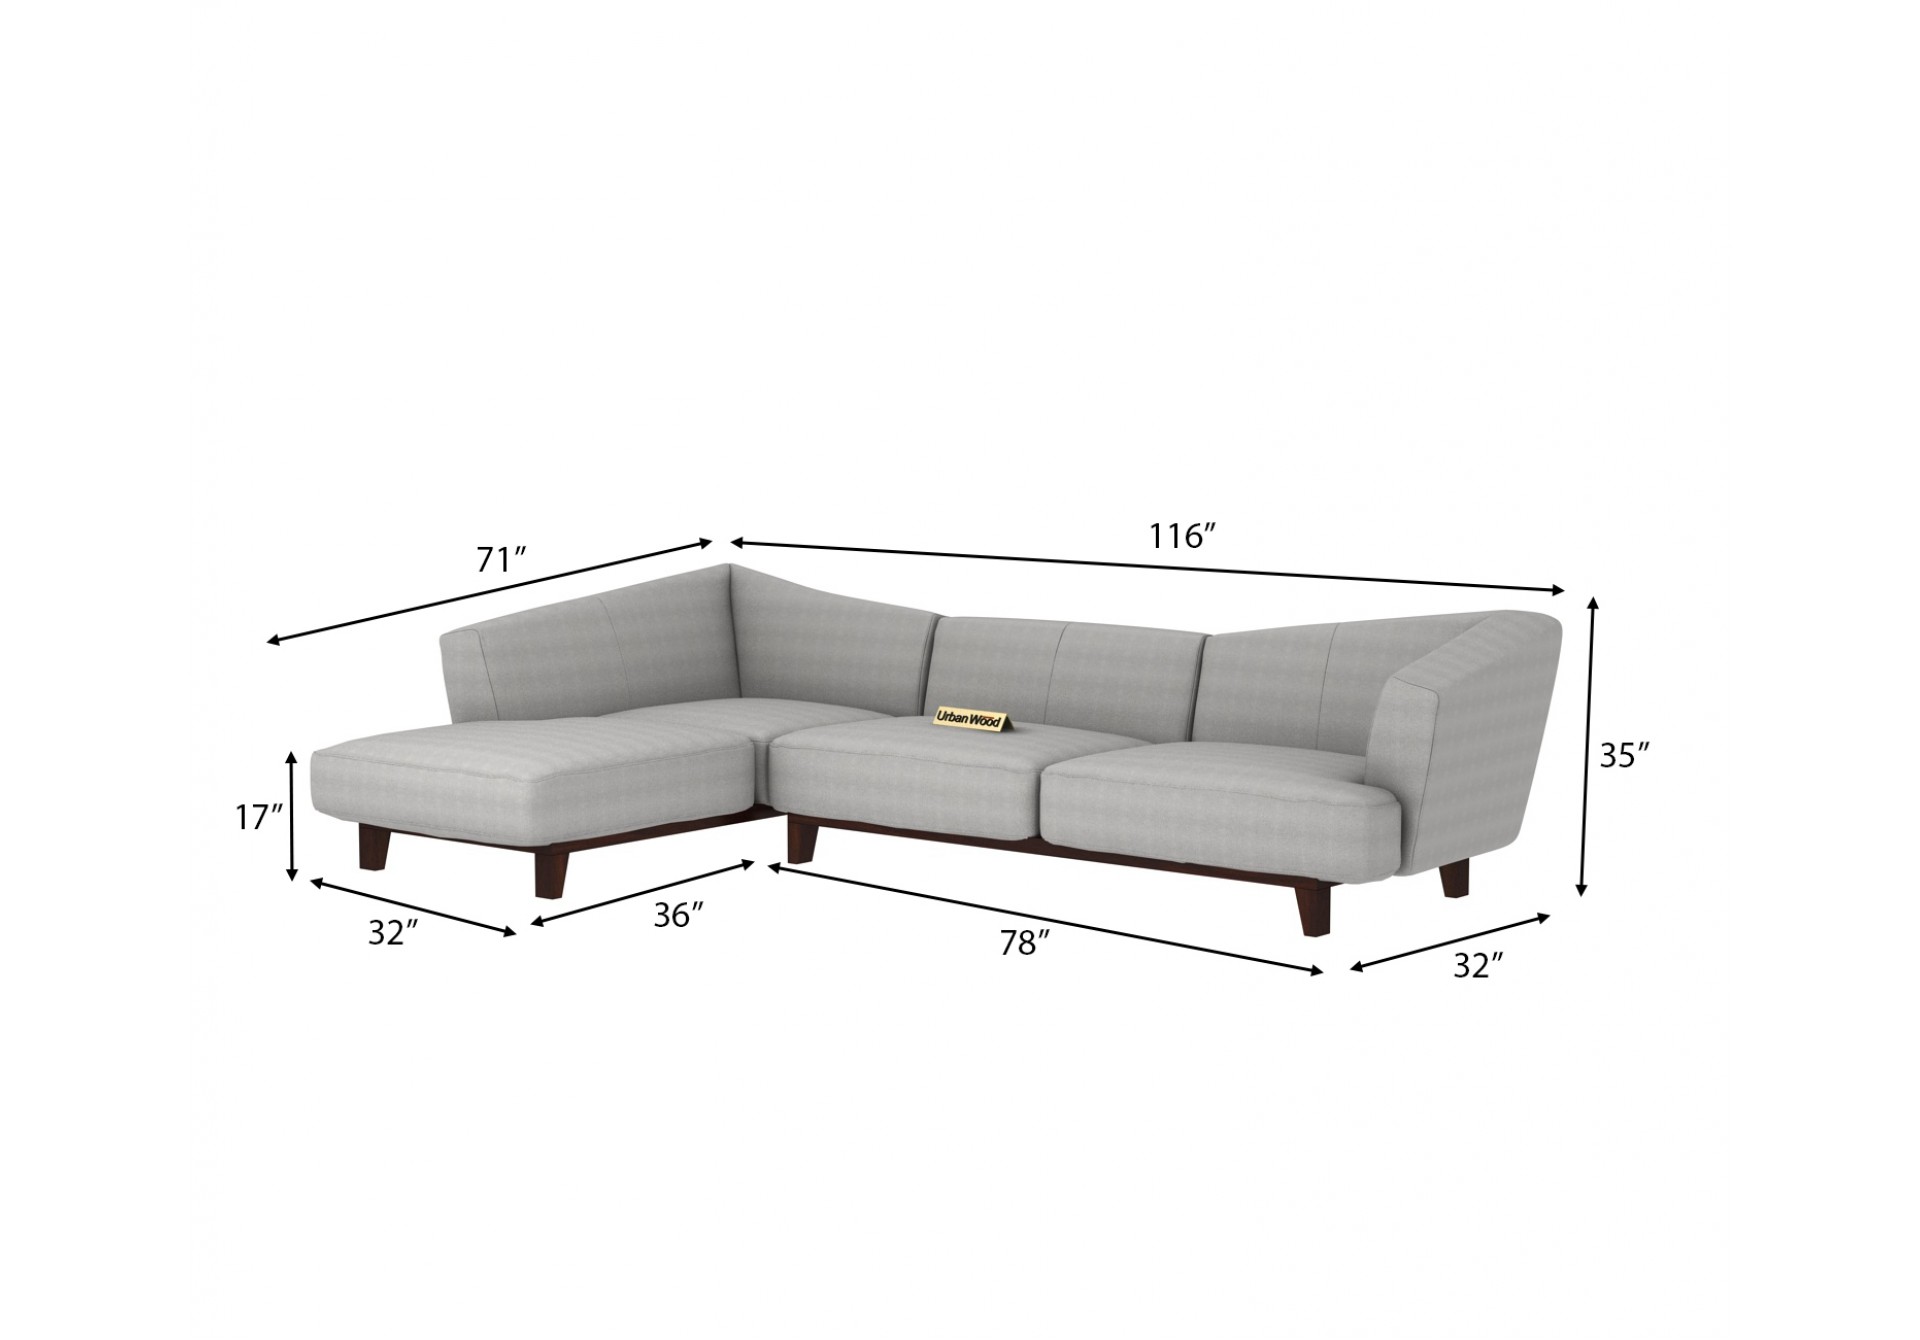 Keller L-Shaped Left Aligned Sofa ( Cotton, Steel grey )